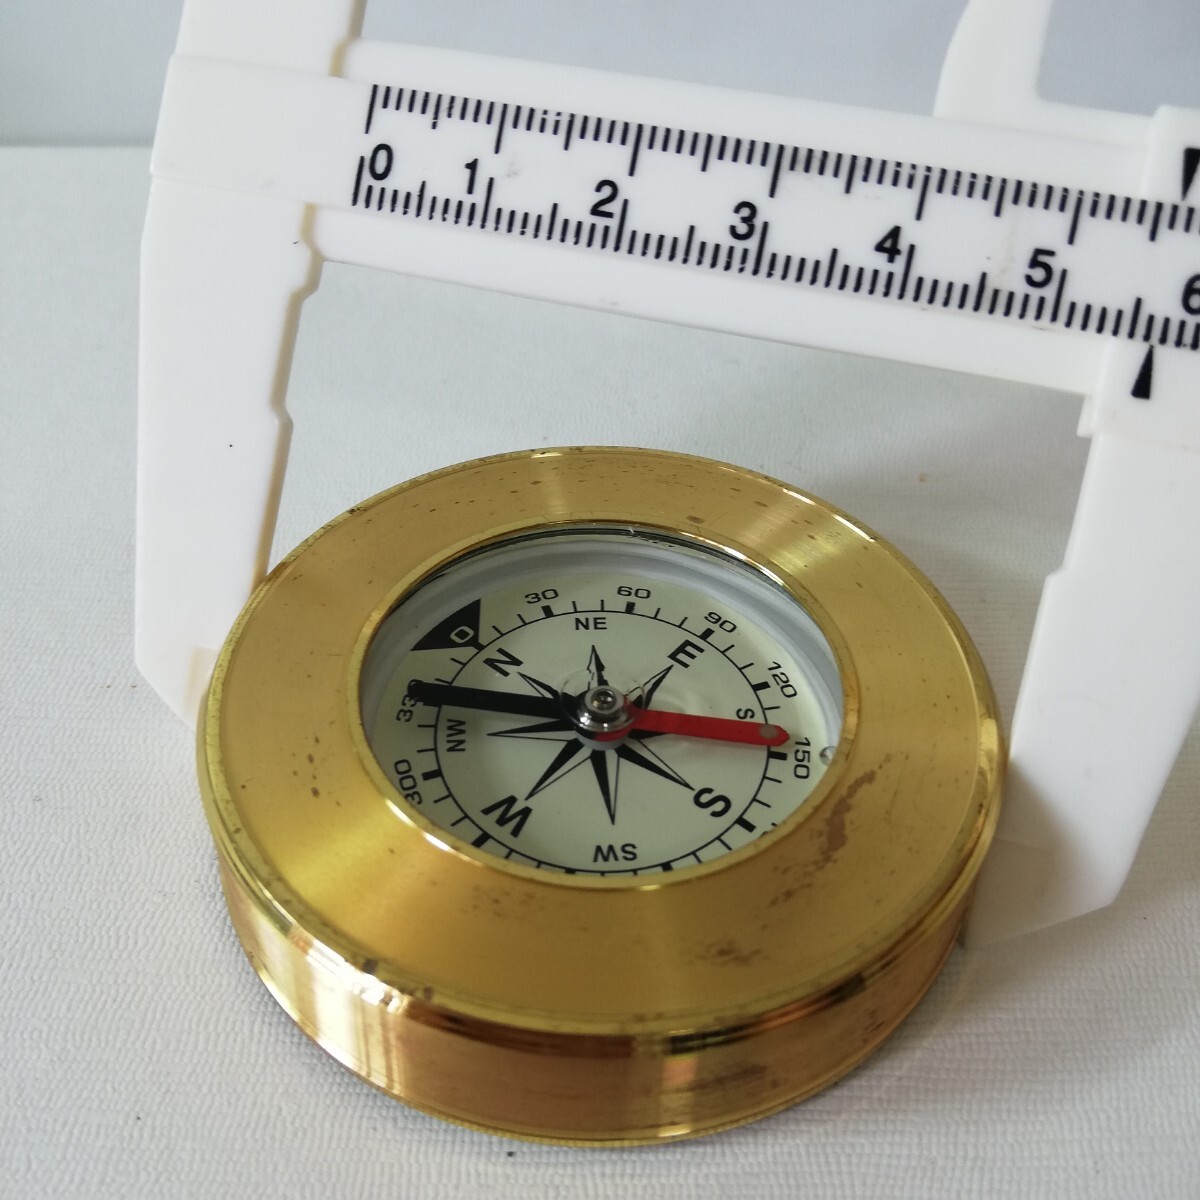 ゴールドメッキ オイル式 方位磁針 方位磁石 直径5.7cm [コンパス アウトドア ハイキング キャンプ オイルコンパス]_画像8